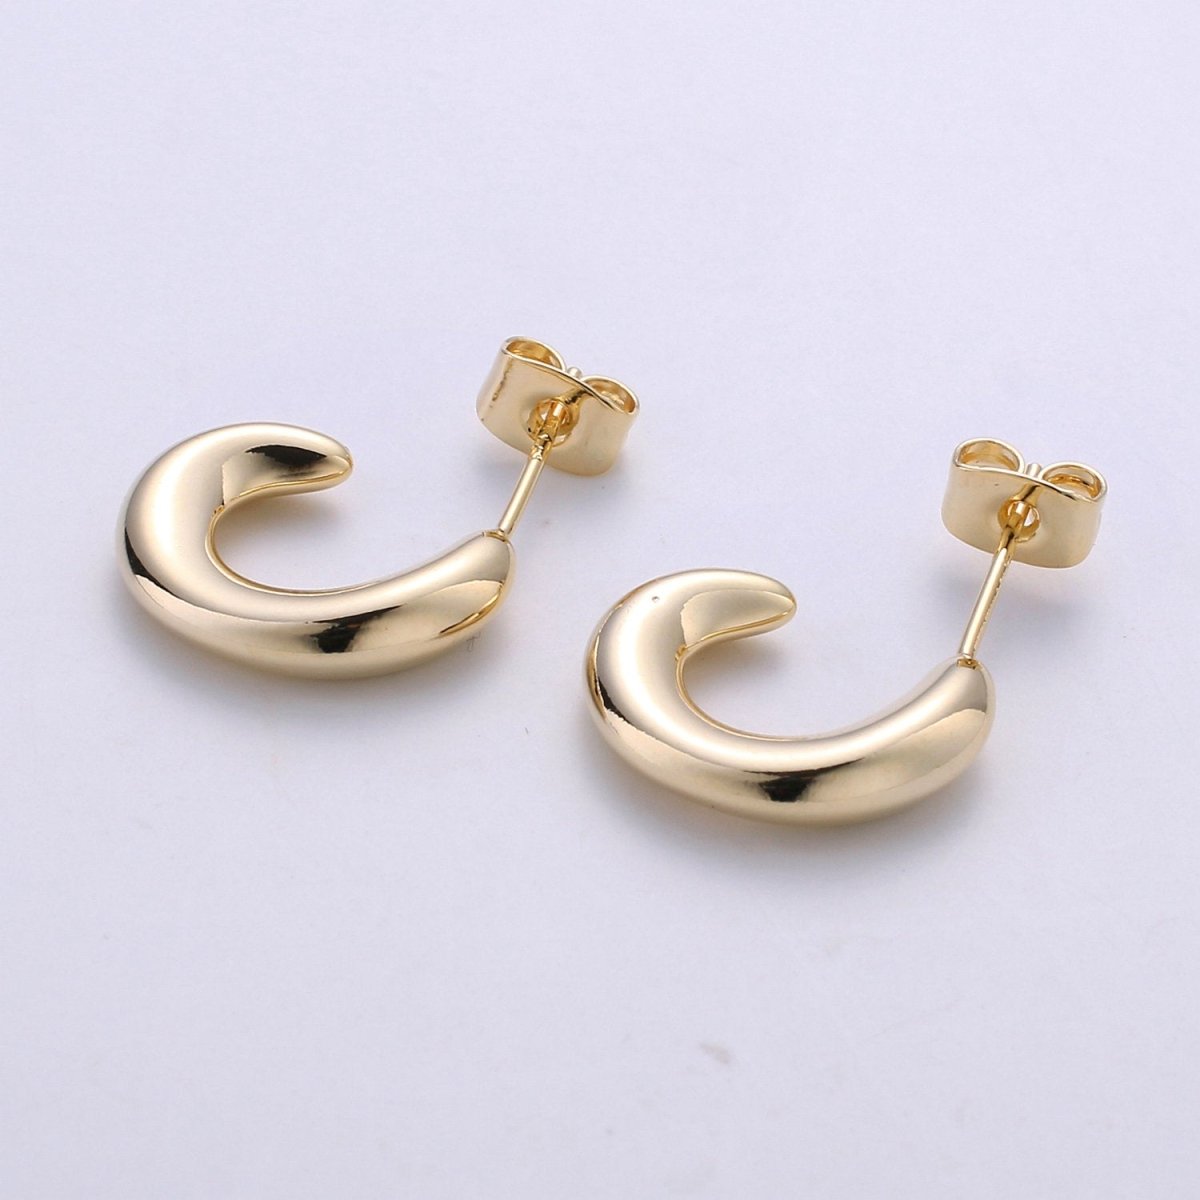 Chunky Gold Filled Hoop Earrings, Fat Hoop Earrings, Chubby Hoop Earrings, Gold Hoop Earrings statement earring | K-433 - DLUXCA